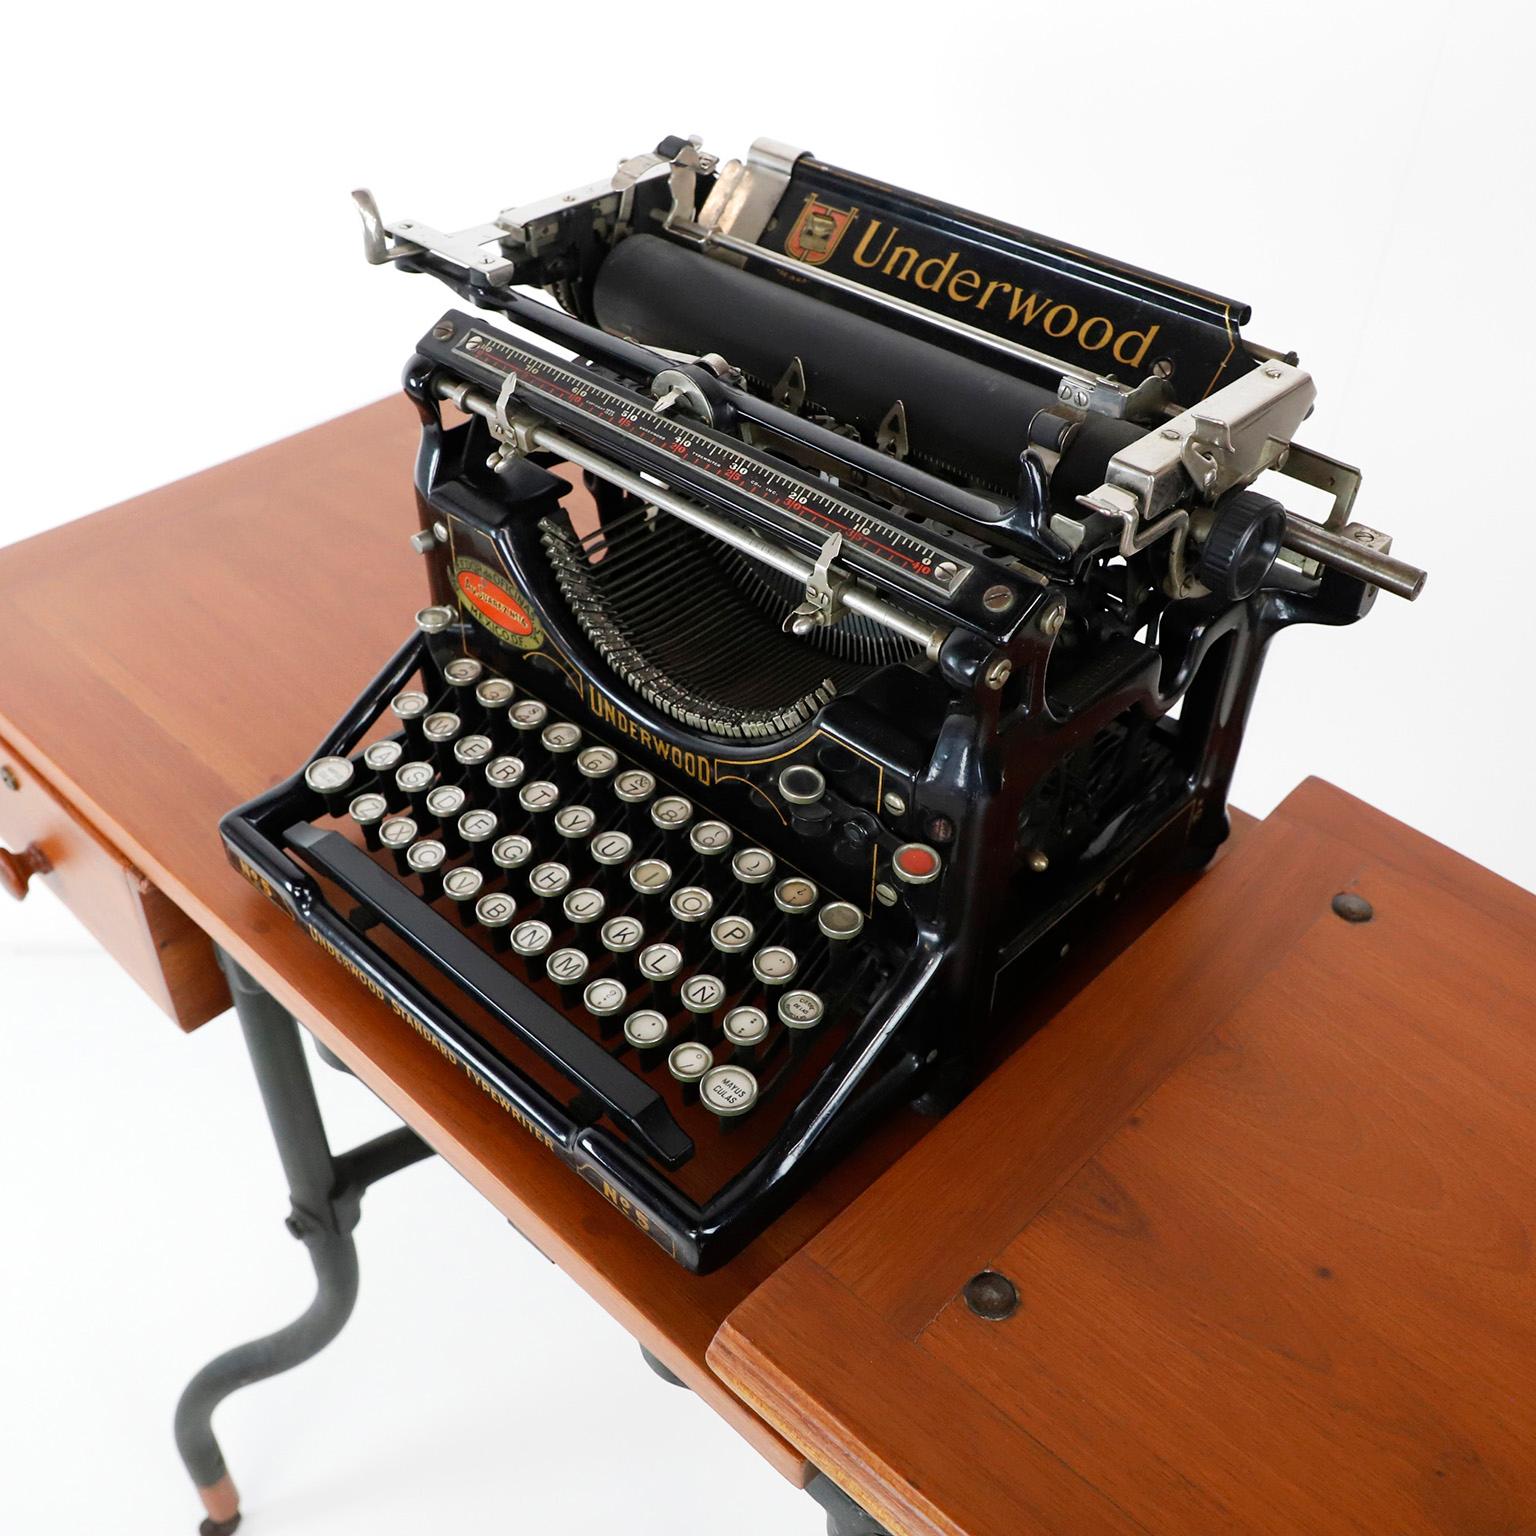 Wir bieten diese antike Underwood Schreibmaschine und Tisch. Beide Gegenstände wurden an einem Ort gefunden, an dem die Zeit stehen geblieben ist. Die Maschine funktioniert einwandfrei und der Tisch wurde leicht restauriert. Beide Artikel sind in